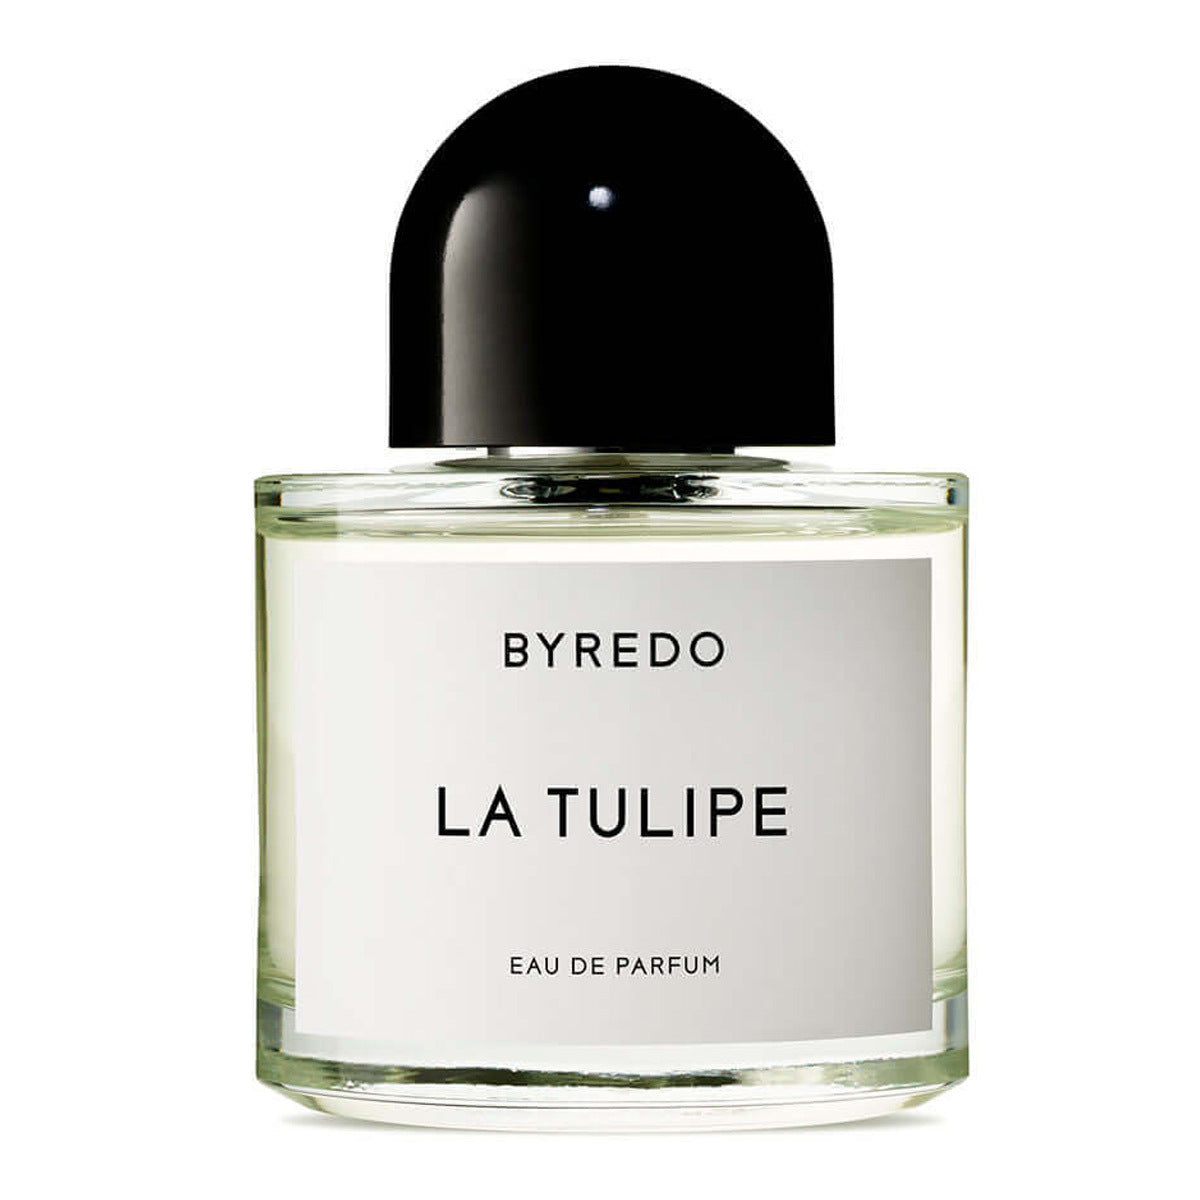 Primary image of La Tulipe Eau de Parfum